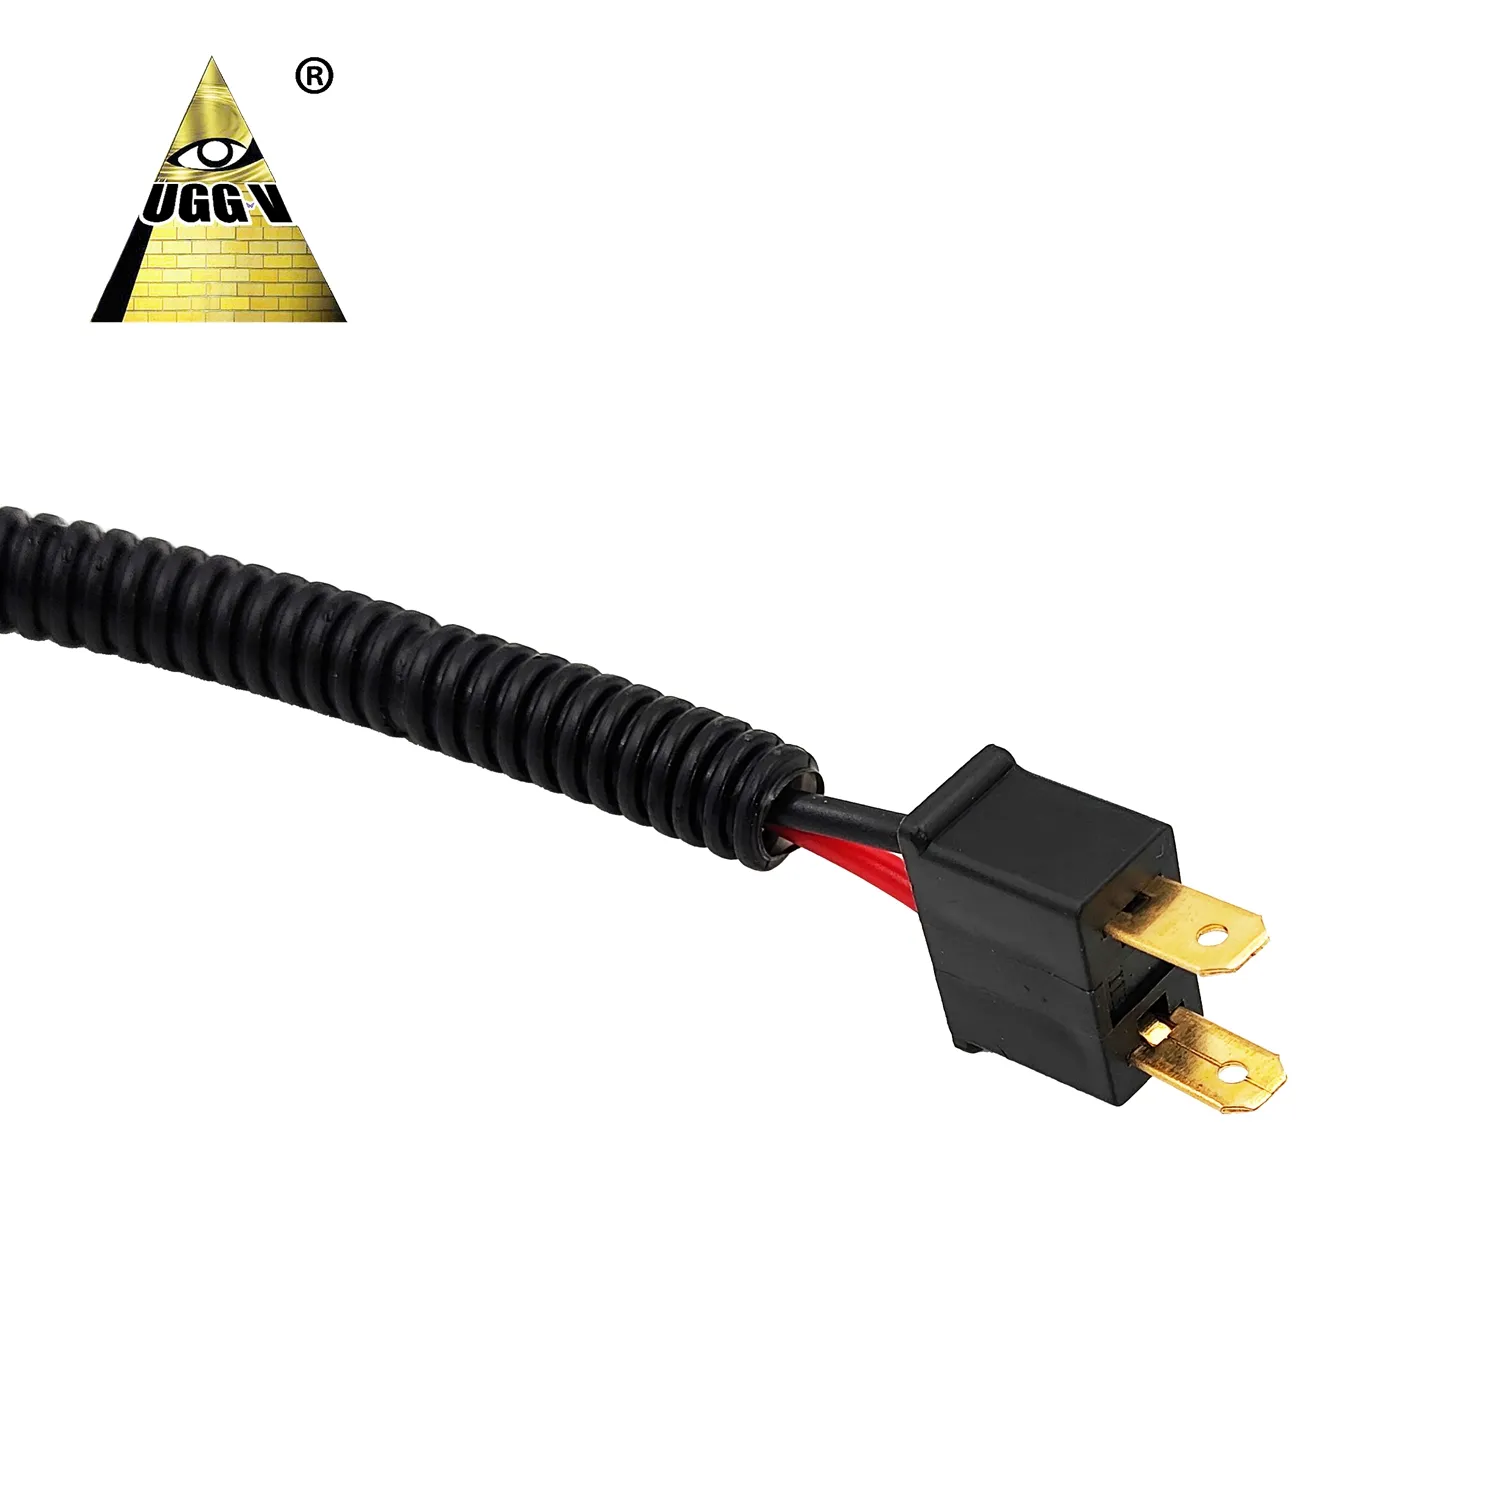 UGGV LED Bar Spot Flut kabel LED Licht leiste Arbeits licht buchse für Auto LED Fahr nebels chein werfer Für Offroad Kabelbaum h7 Kabel